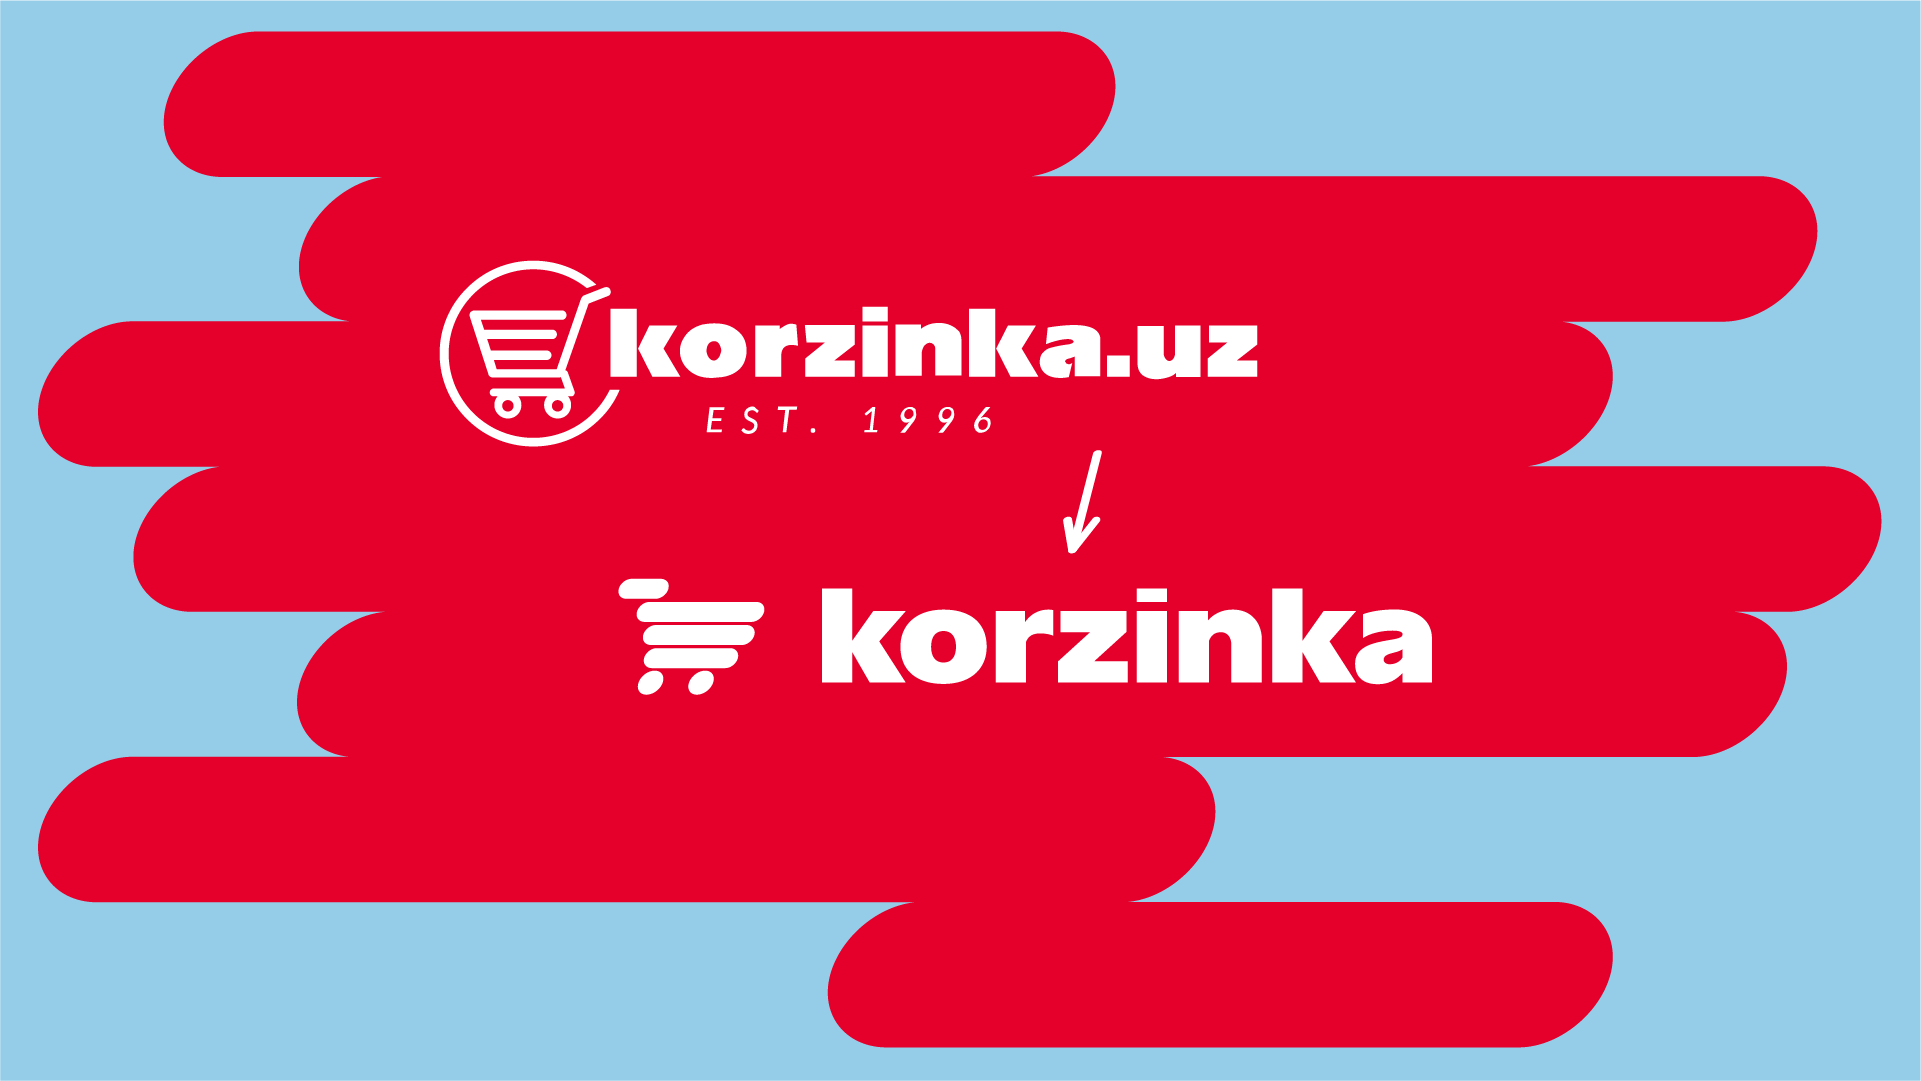 Korzinka.uz ребрендинг - новый логотип и слоган